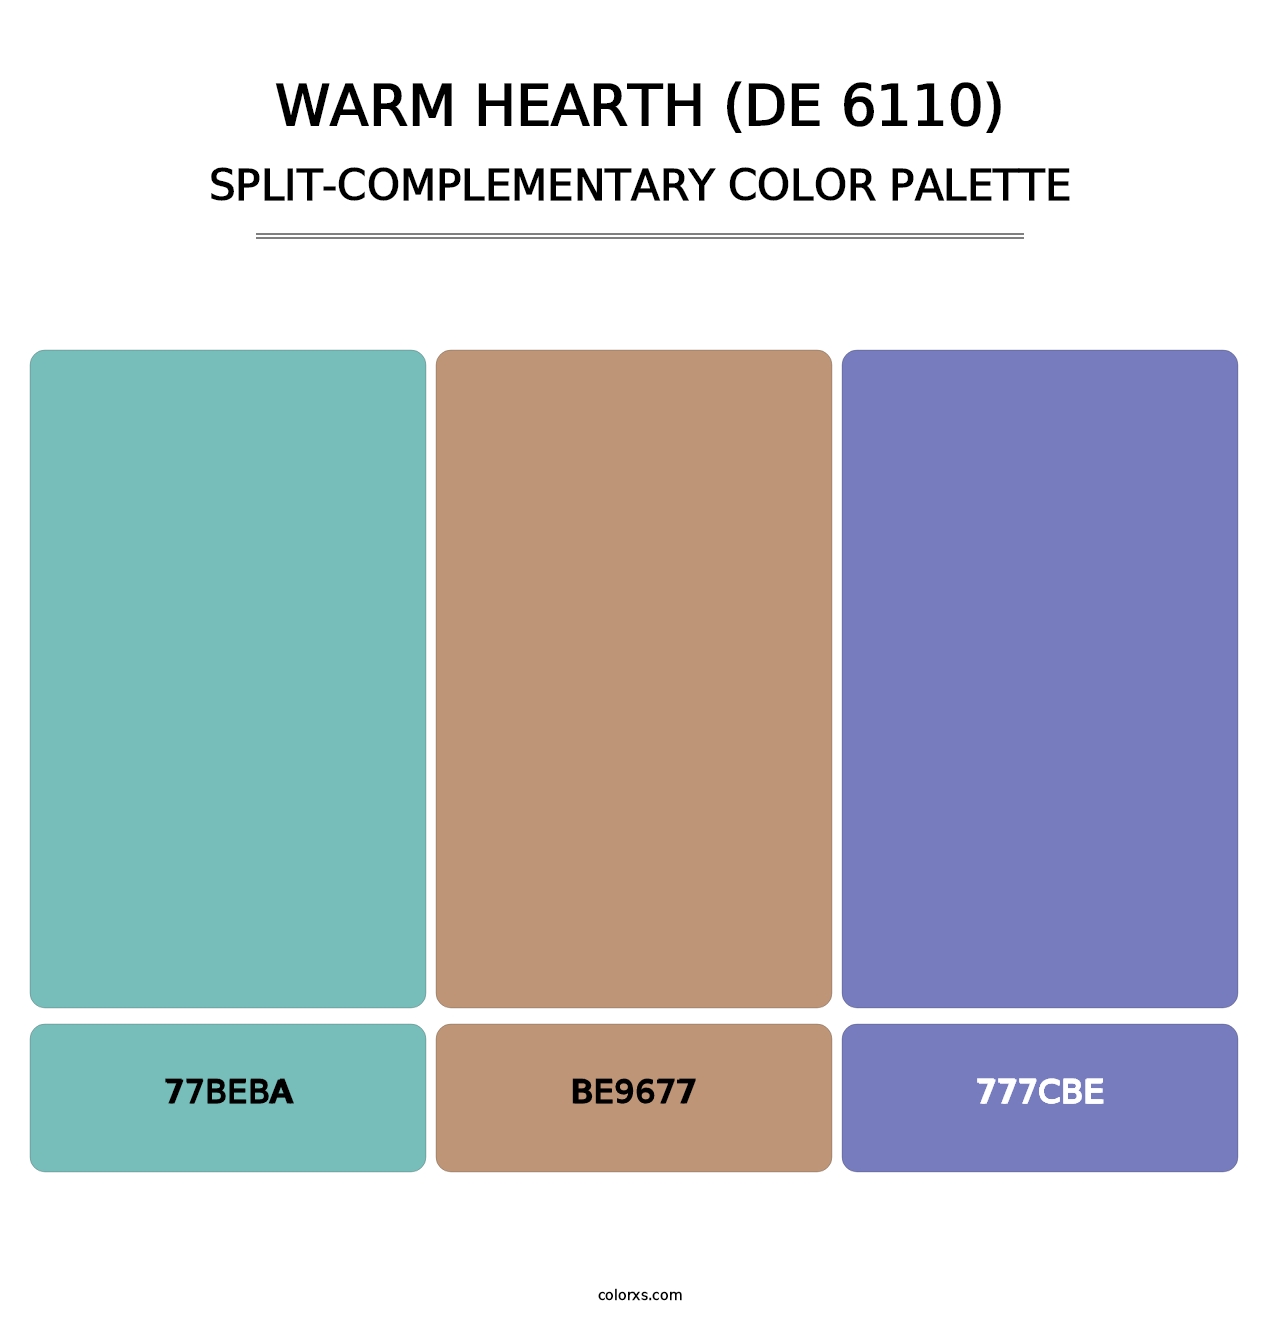 Warm Hearth (DE 6110) - Split-Complementary Color Palette